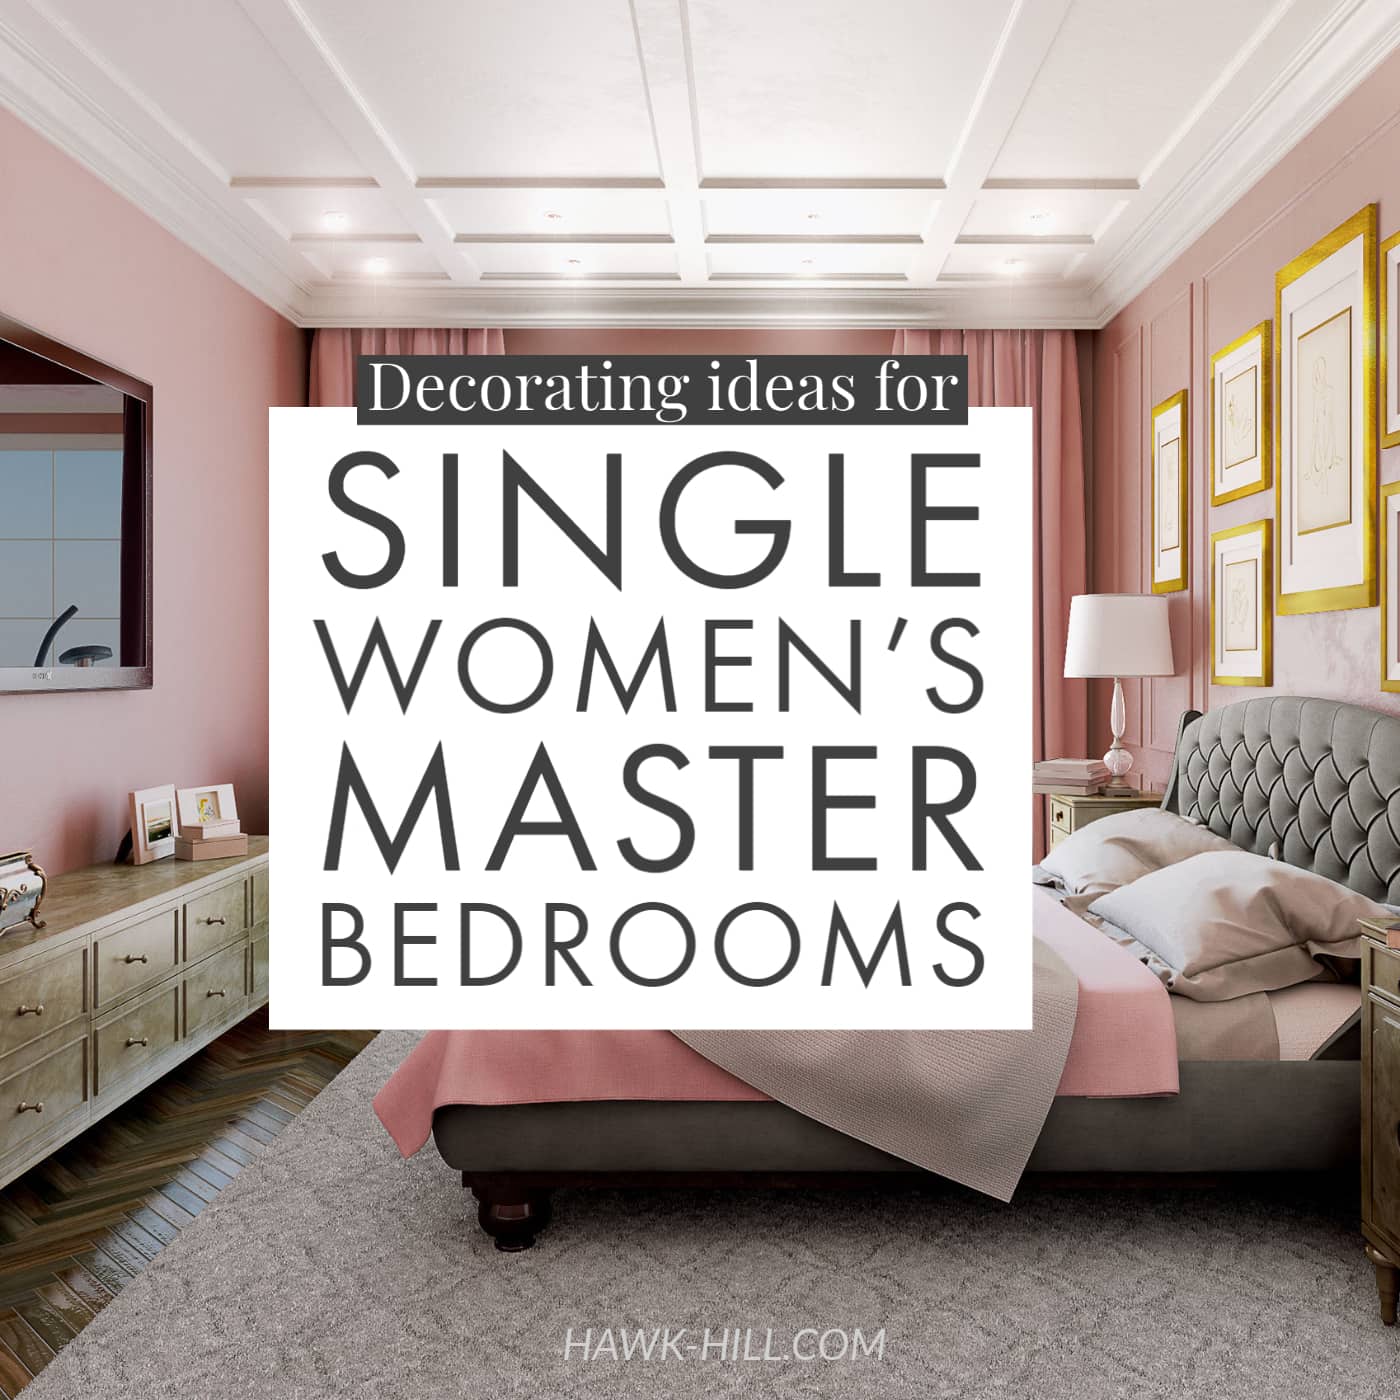 Single bedroom ideas